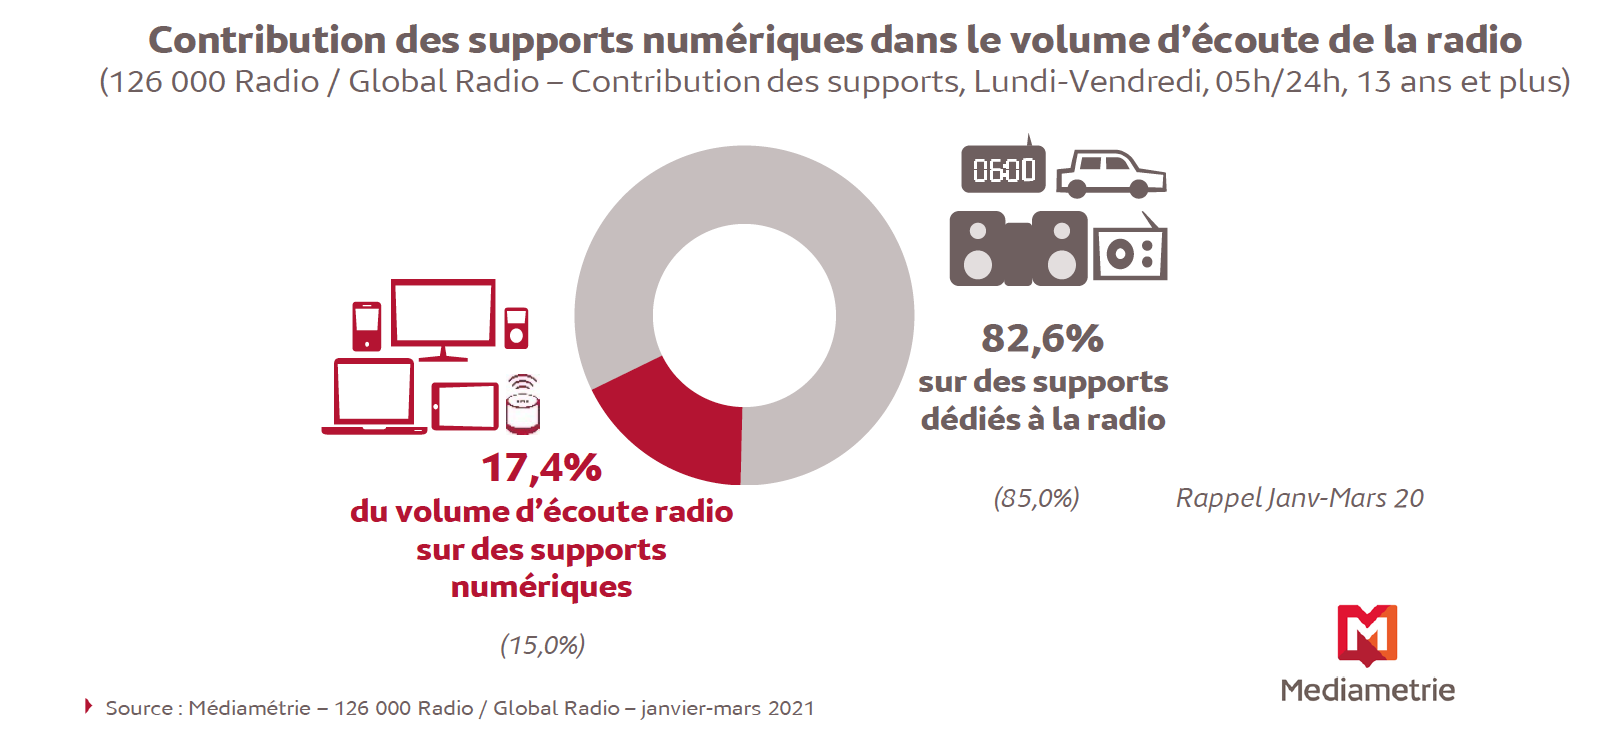 Plus de 8 millions de personnes écoutent chaque jour la radio sur des supports numériques 